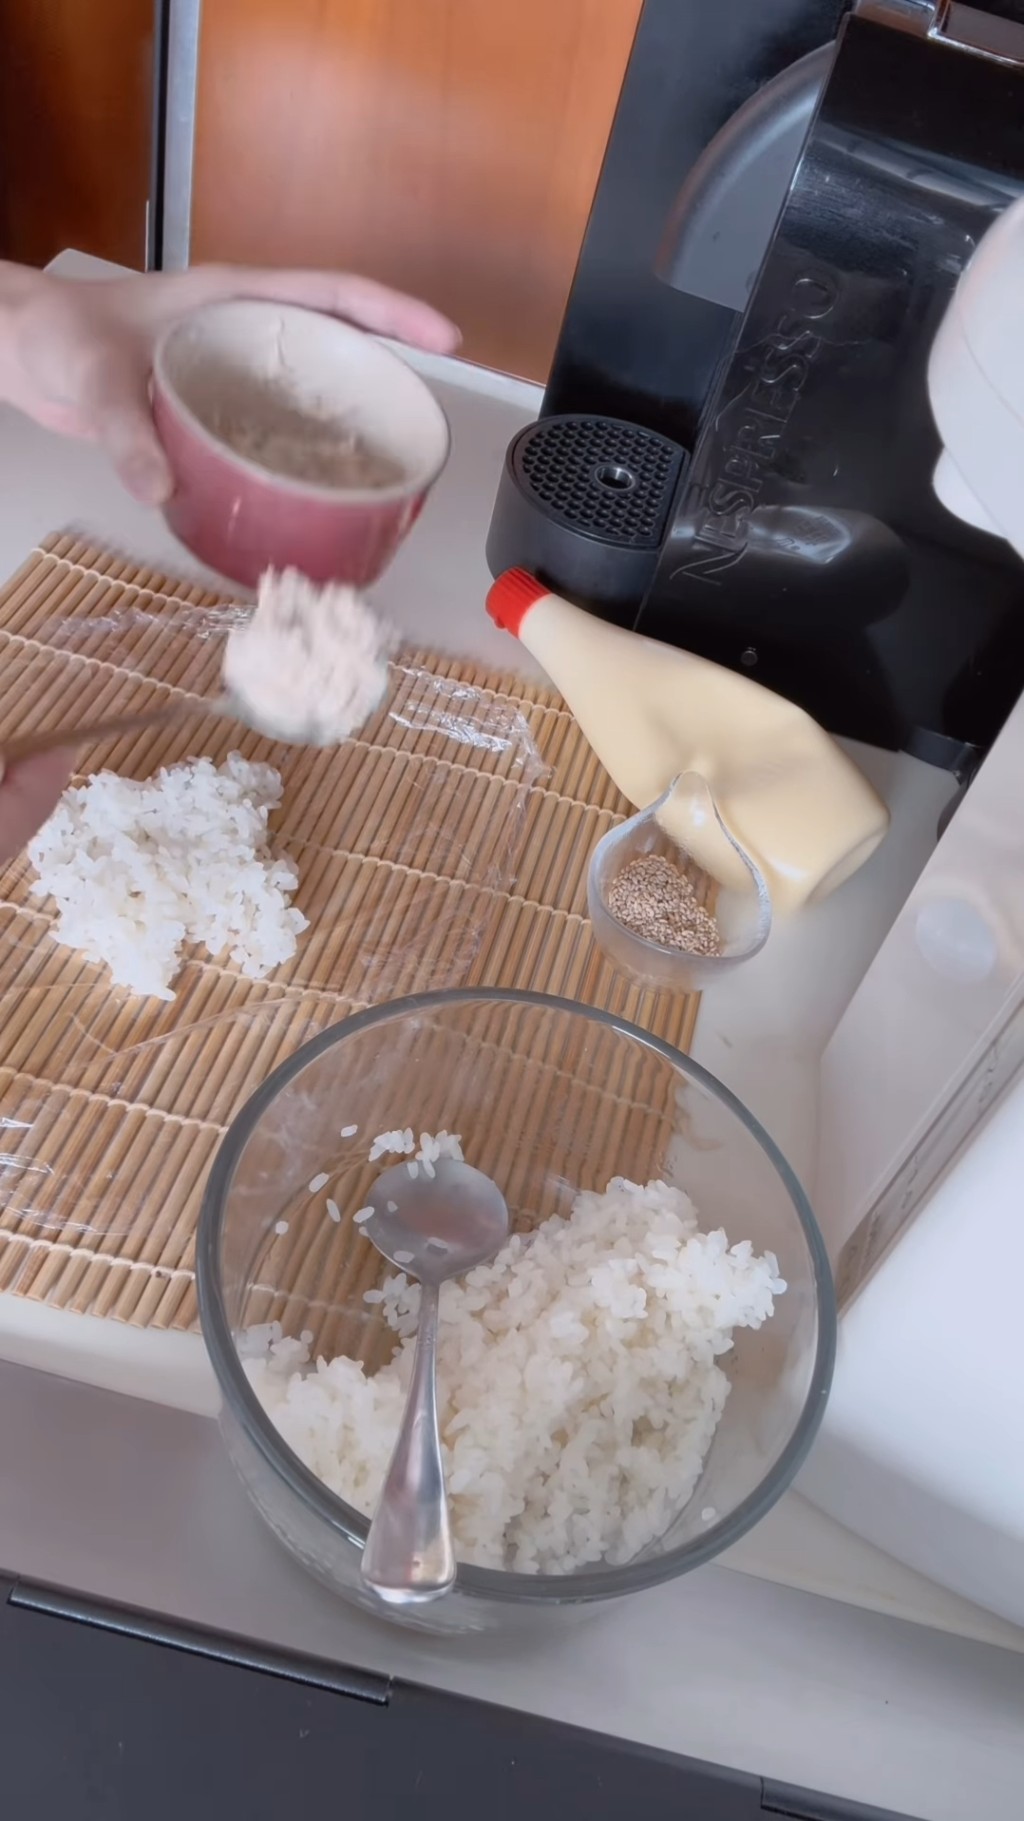 用一张保鲜纸先铺在桌上，然后在保鲜纸上舀上适量的珍珠米饭，把珍珠米饭铺平后加入已捞好的吞拿鱼酱。